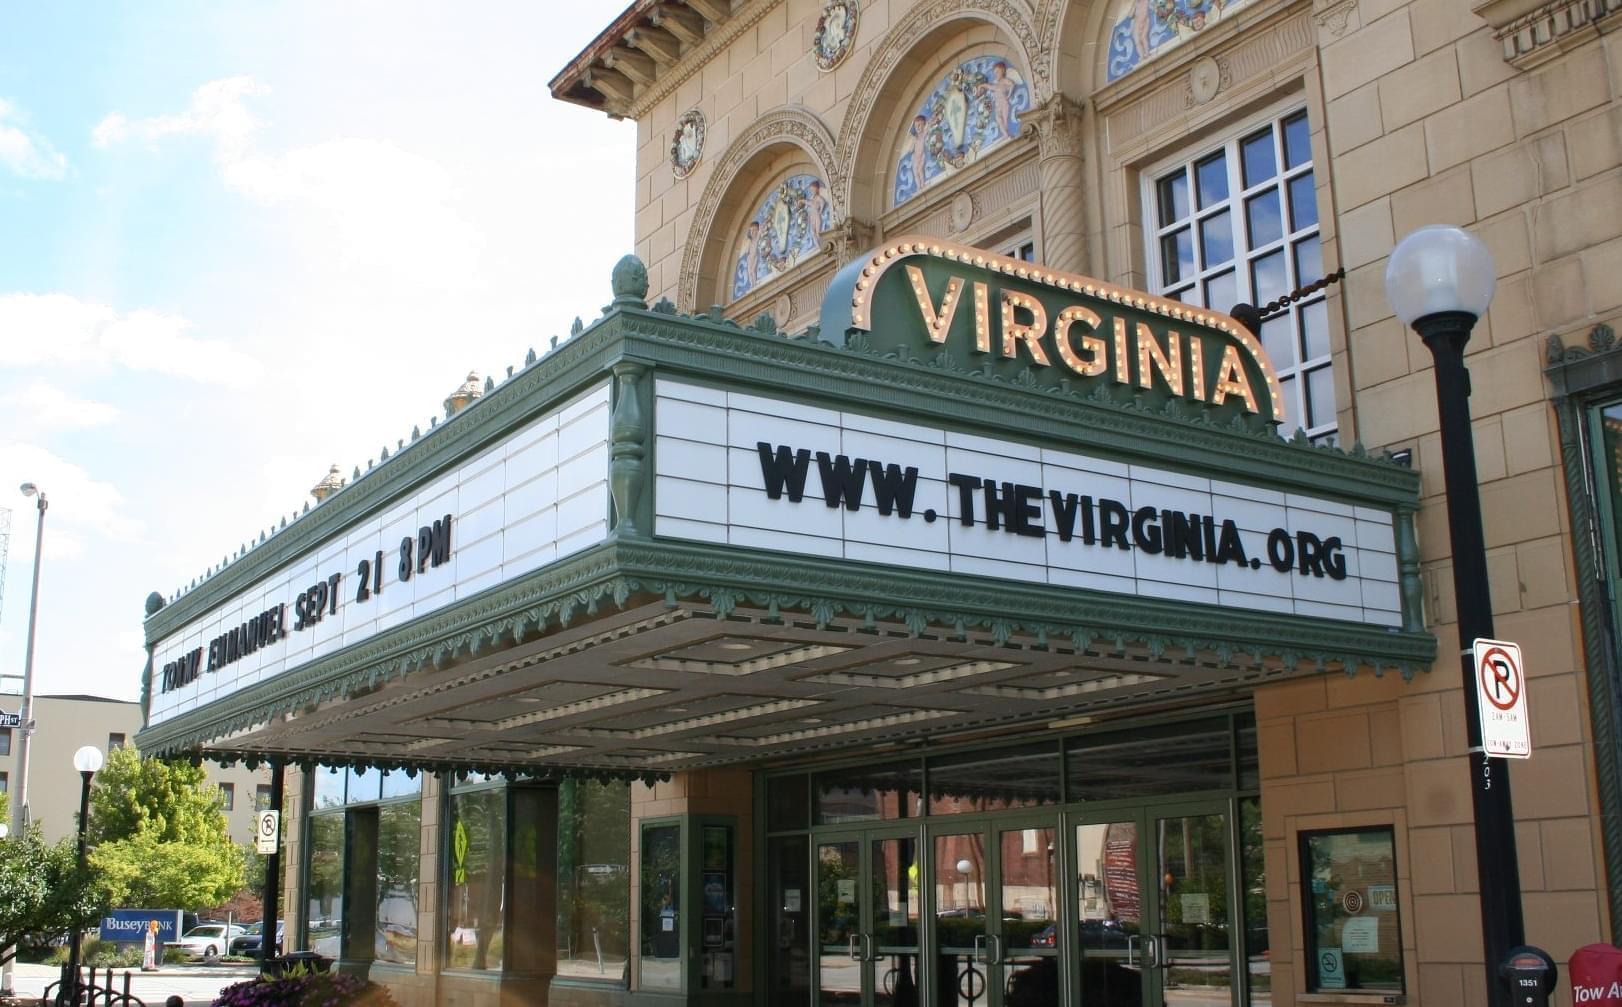 Virginia Theatre